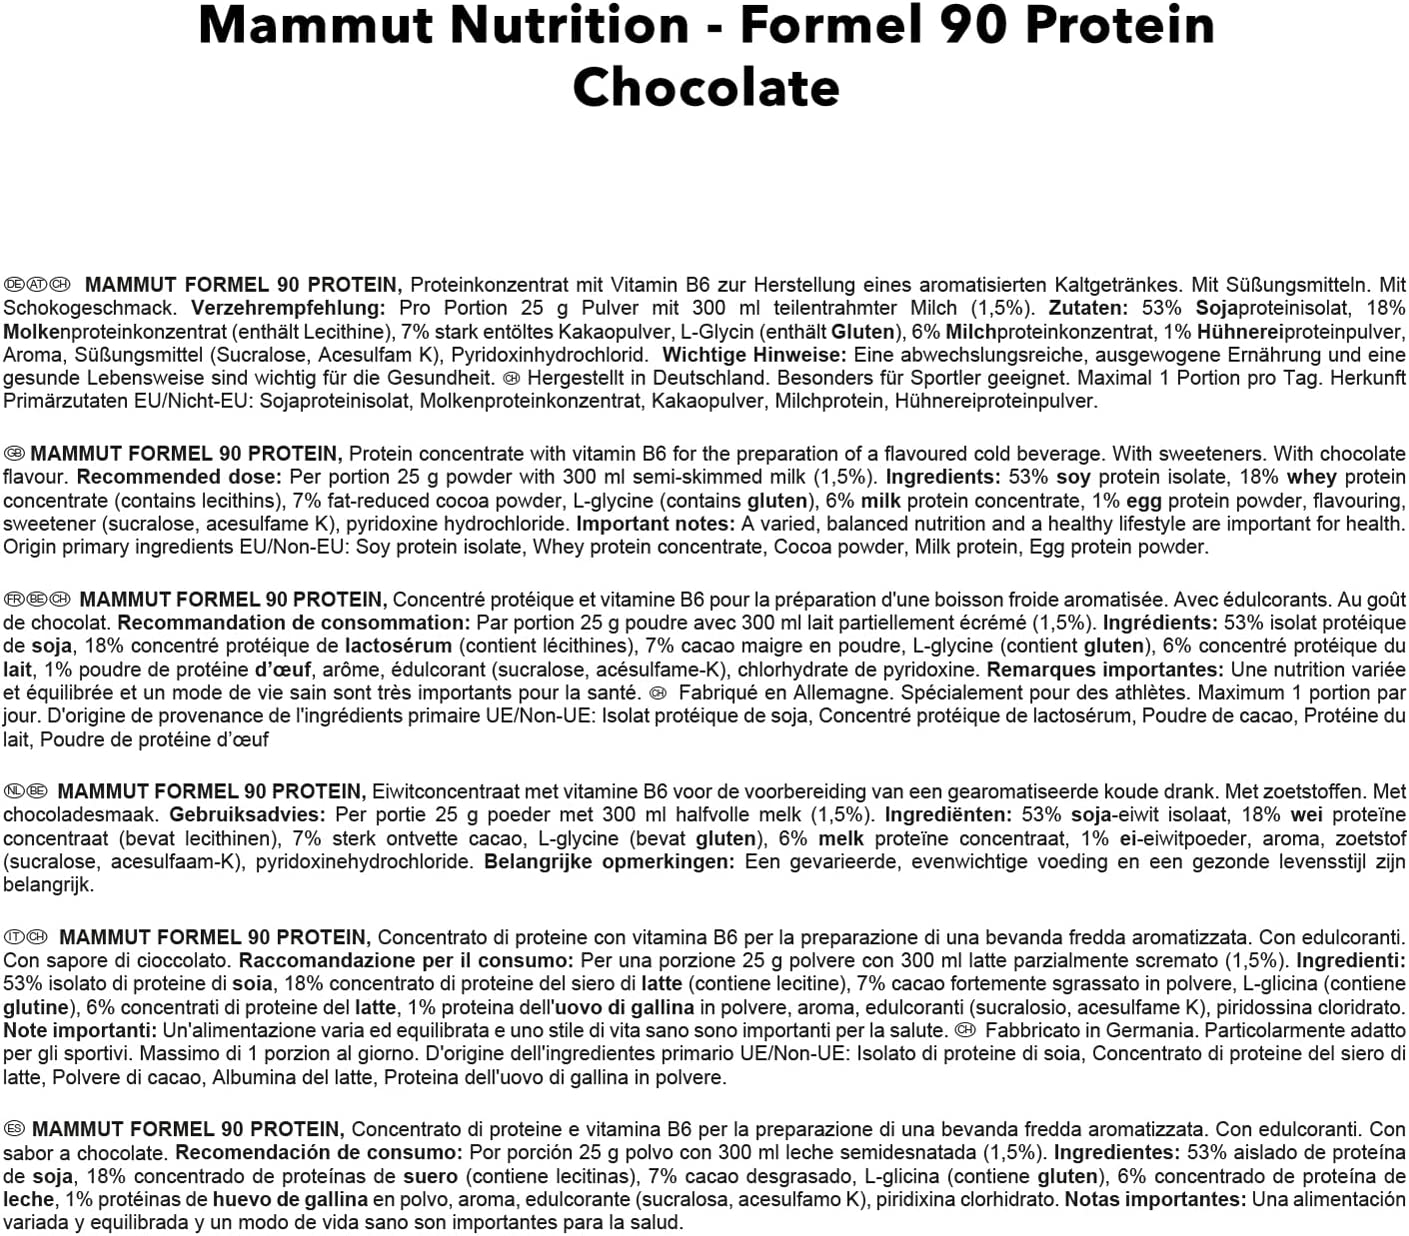 Mammut Formel 90 Protein Zutaten